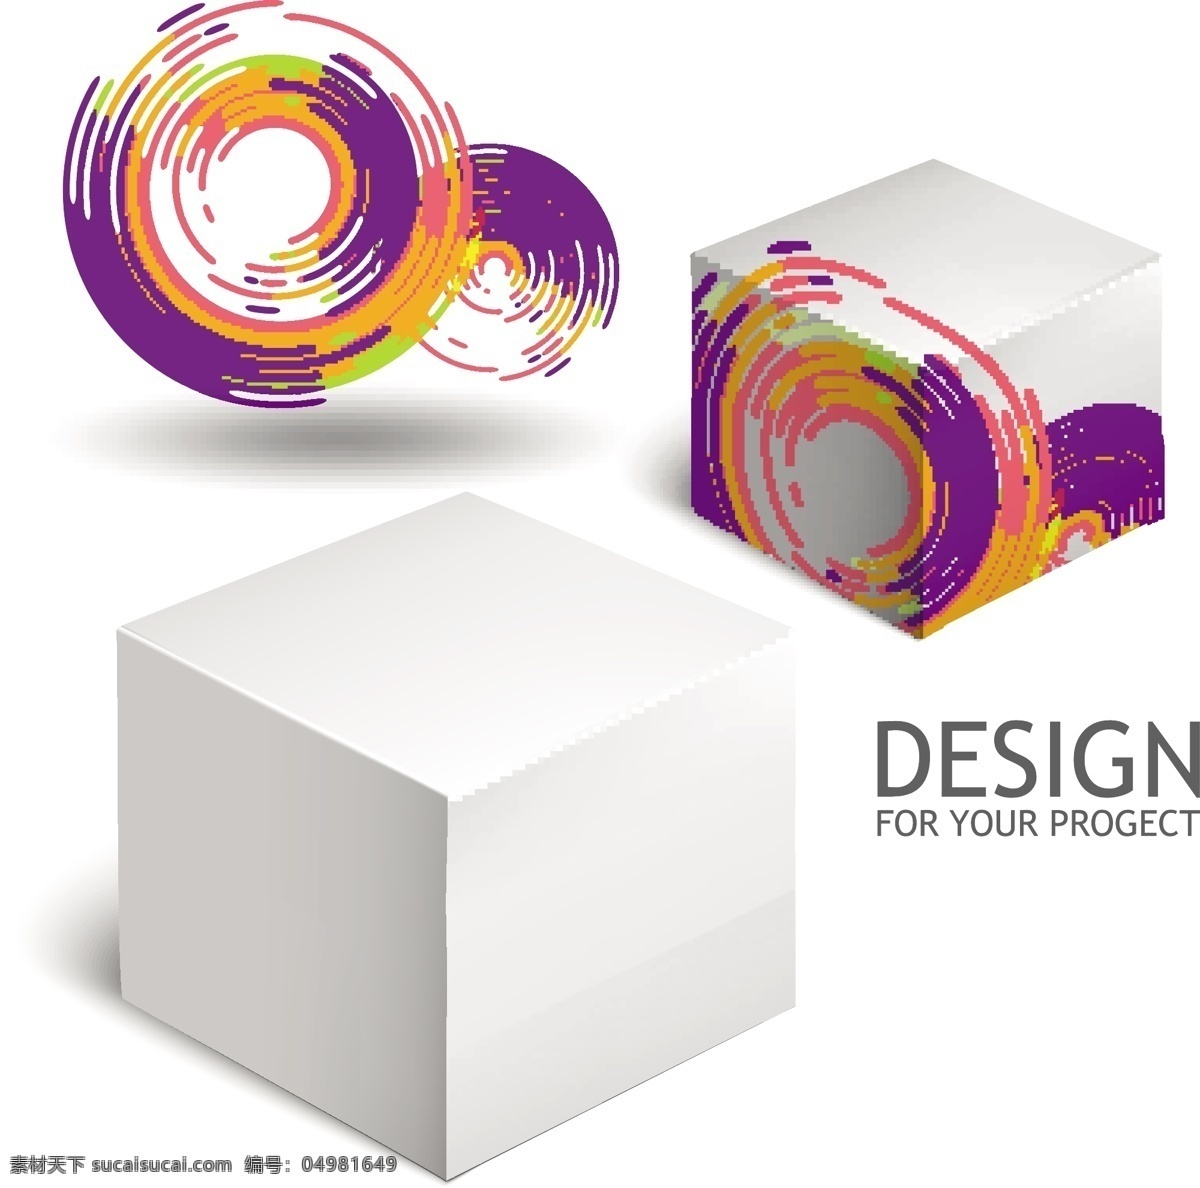 创意 包装盒 空白包装 纸盒设计 包装盒设计 盒装 包装效果图 创意包装设计 产品包装设计 包装设计 矢量素材 白色